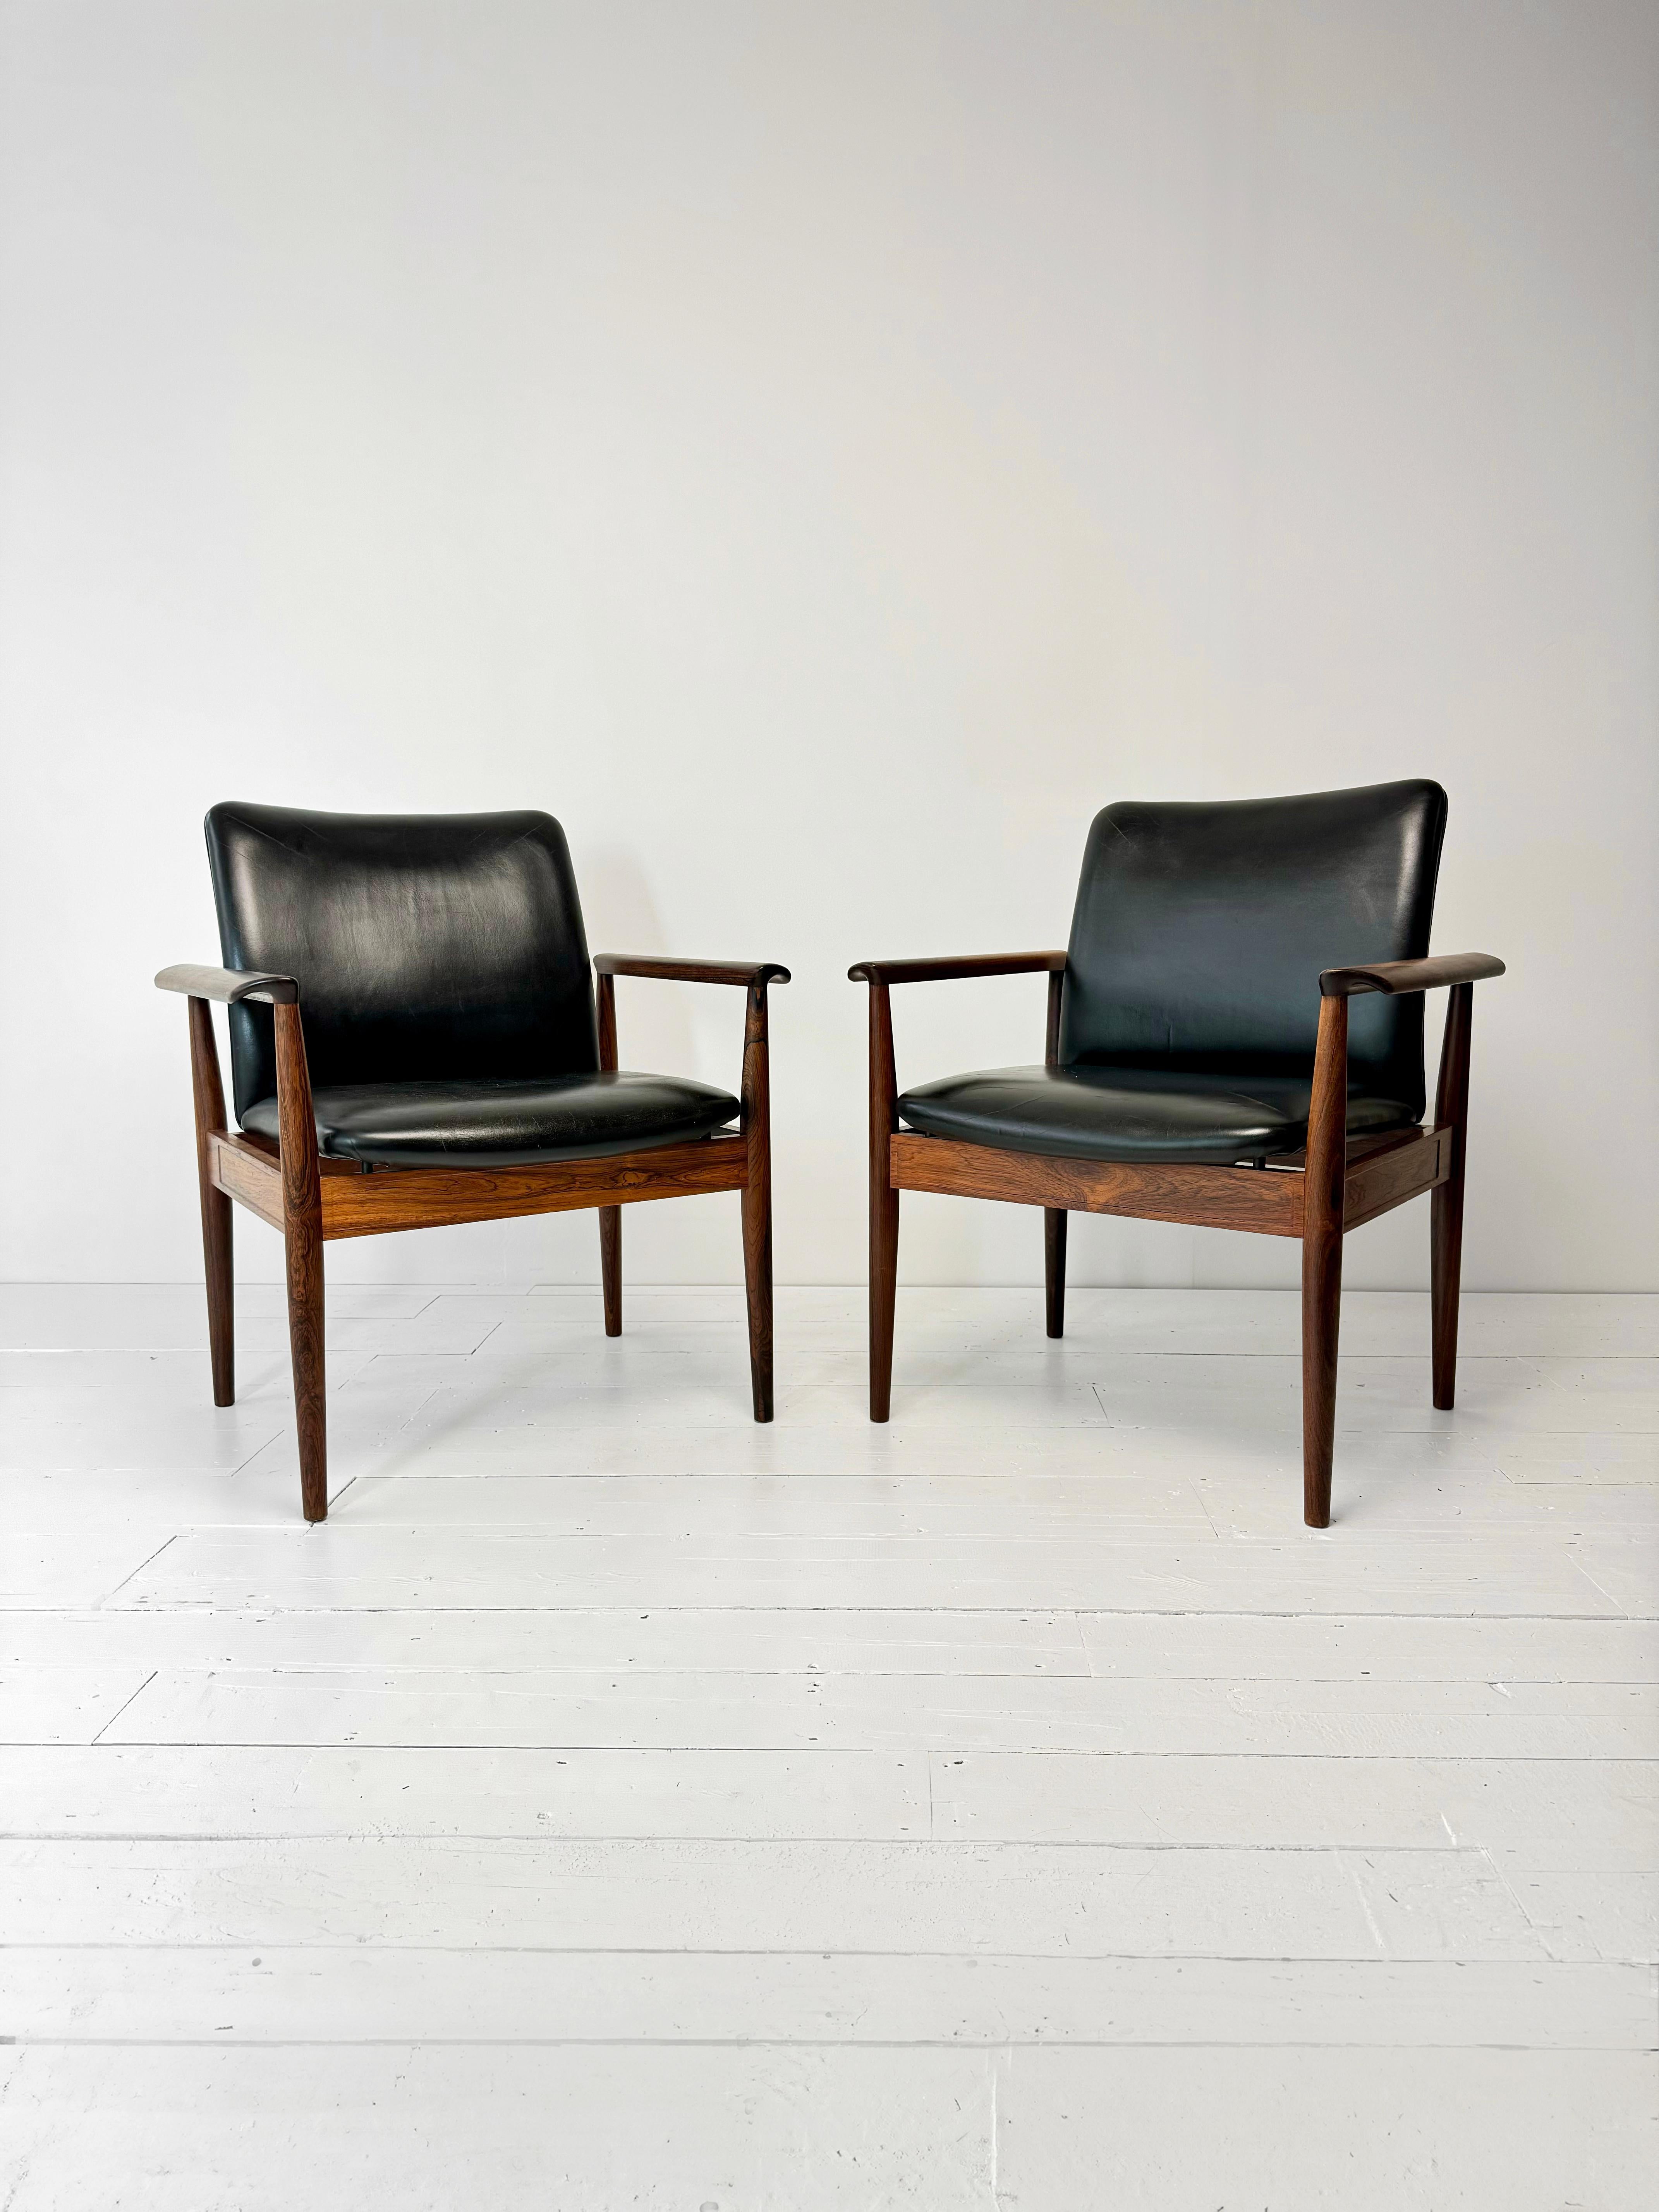 Le fauteuil Diplomat en palissandre et cuir noir, conçu par l'emblématique designer danois Finn Juhl pour la France et Sons, fabricants de meubles danois renommés des années 1960, est une pièce rare et importante de la modernité du milieu du siècle.